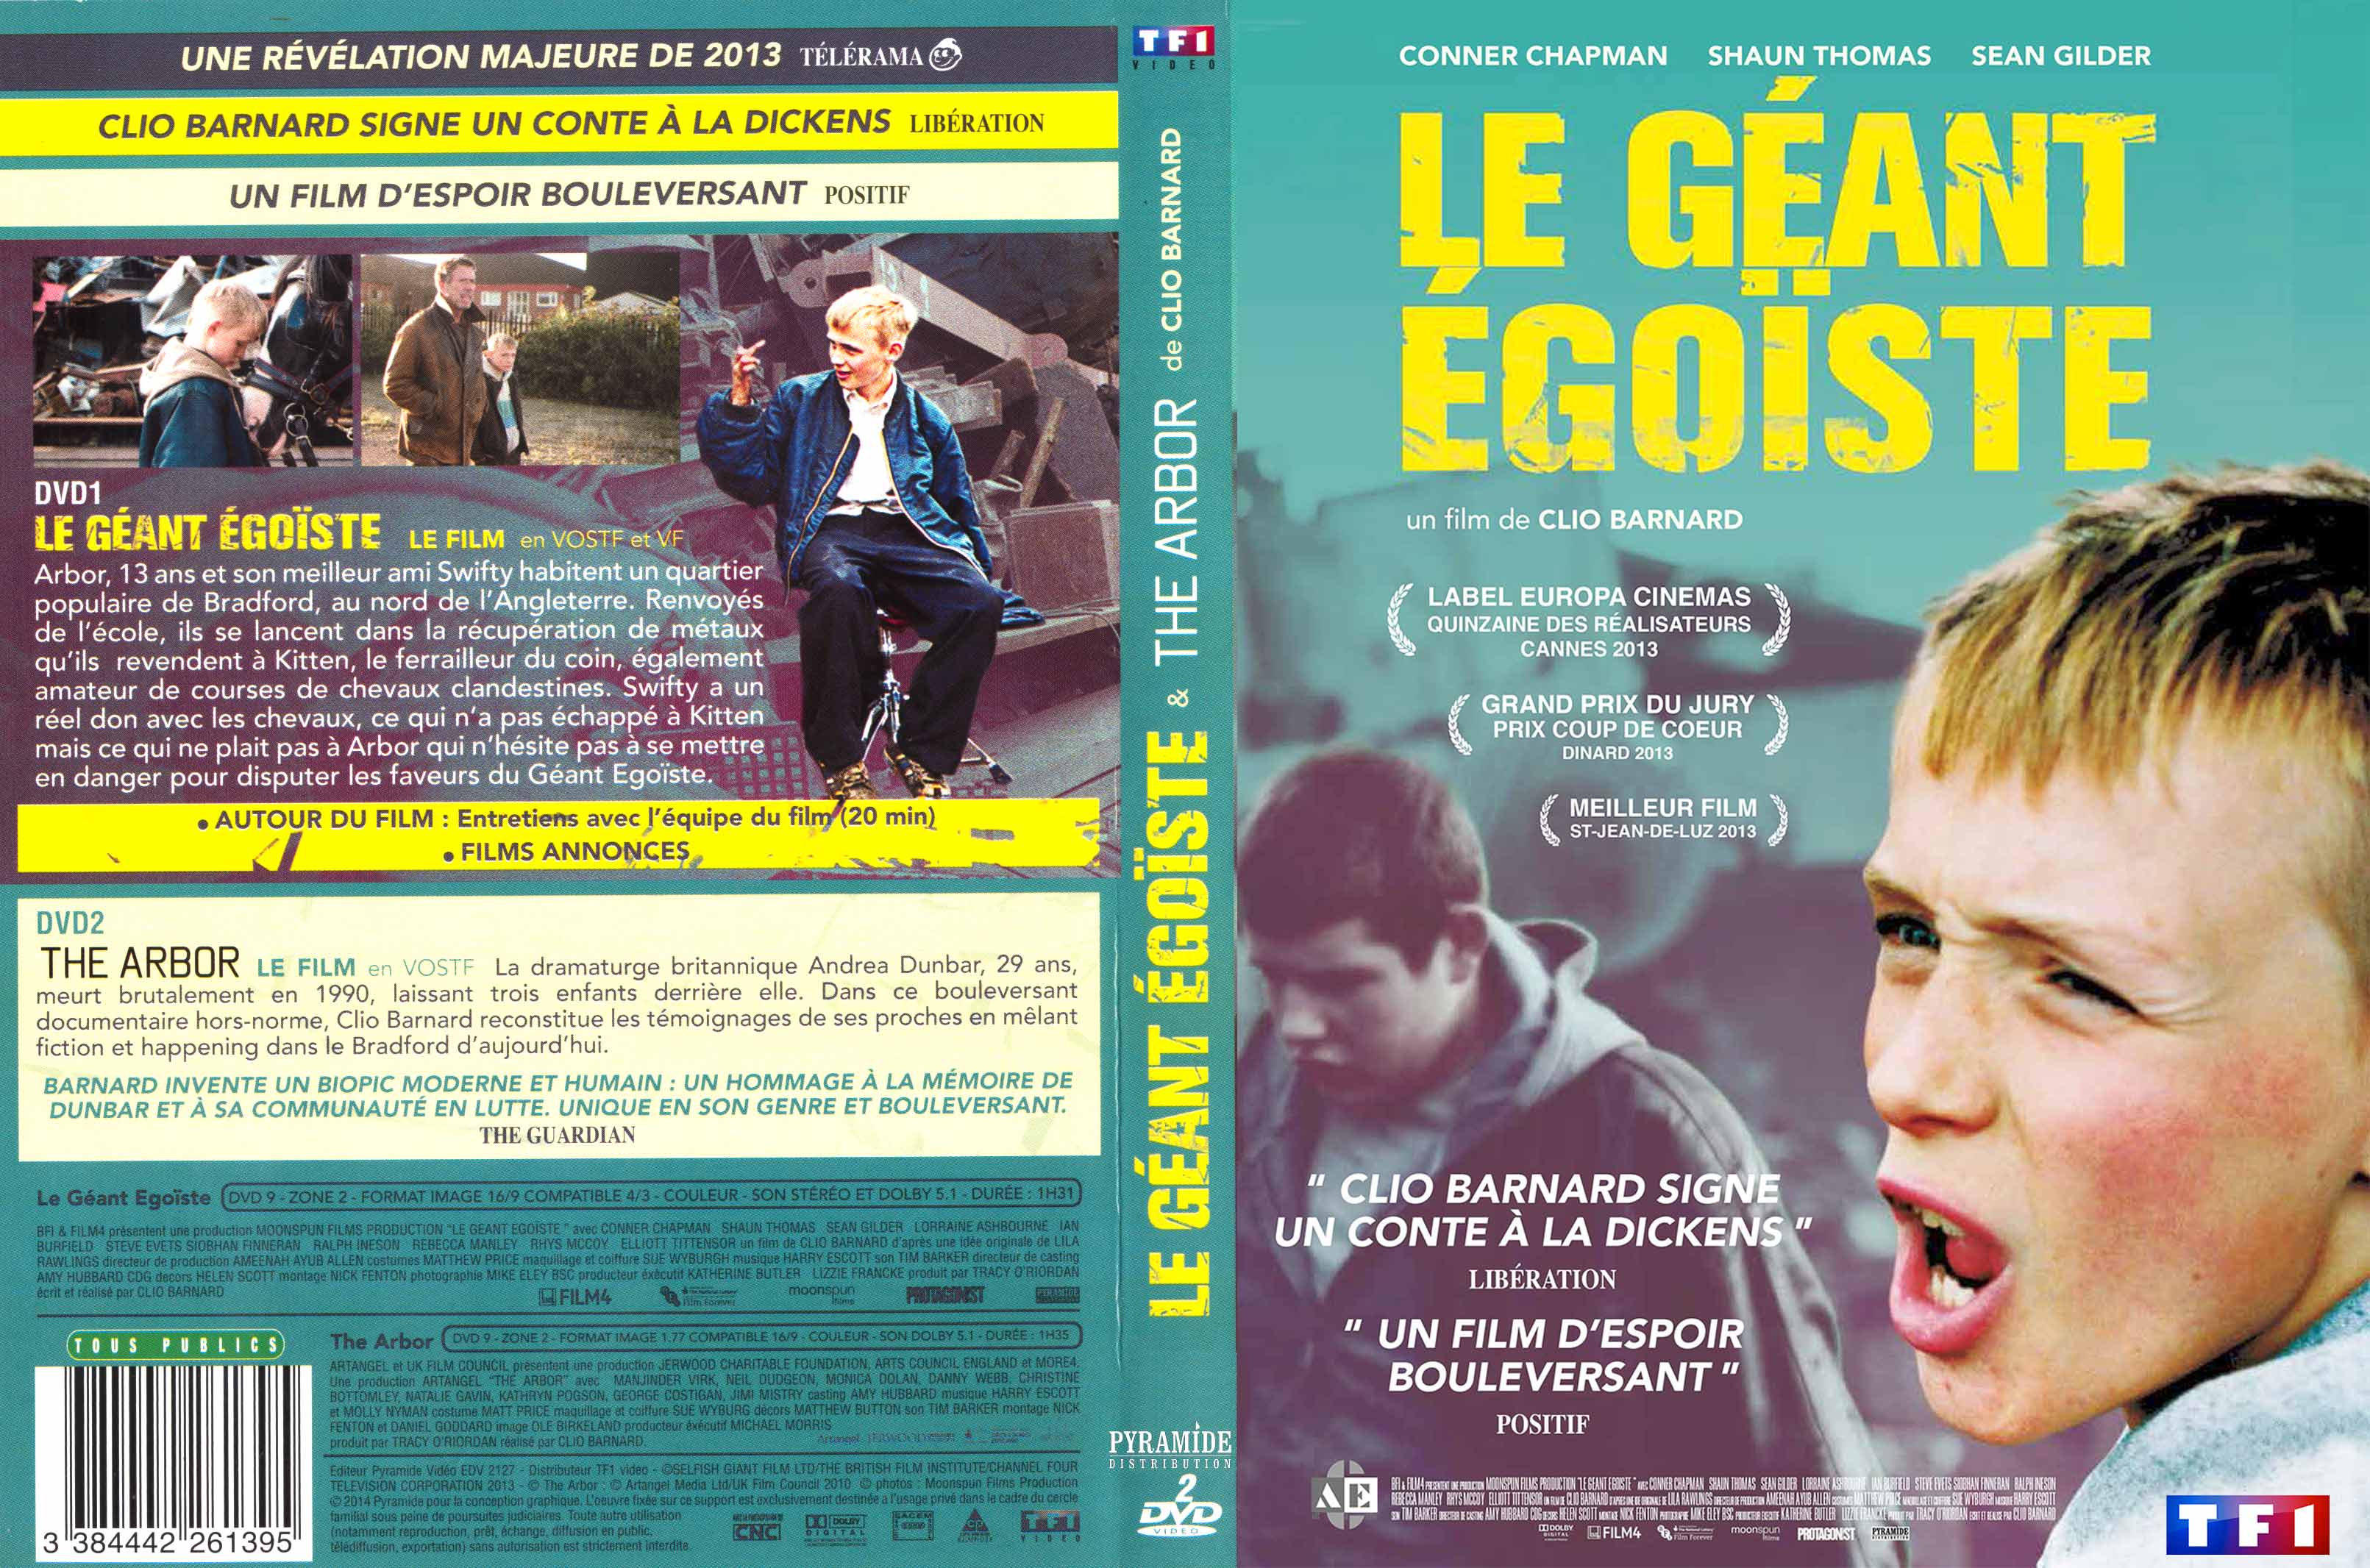 Jaquette DVD Le Gant goiste